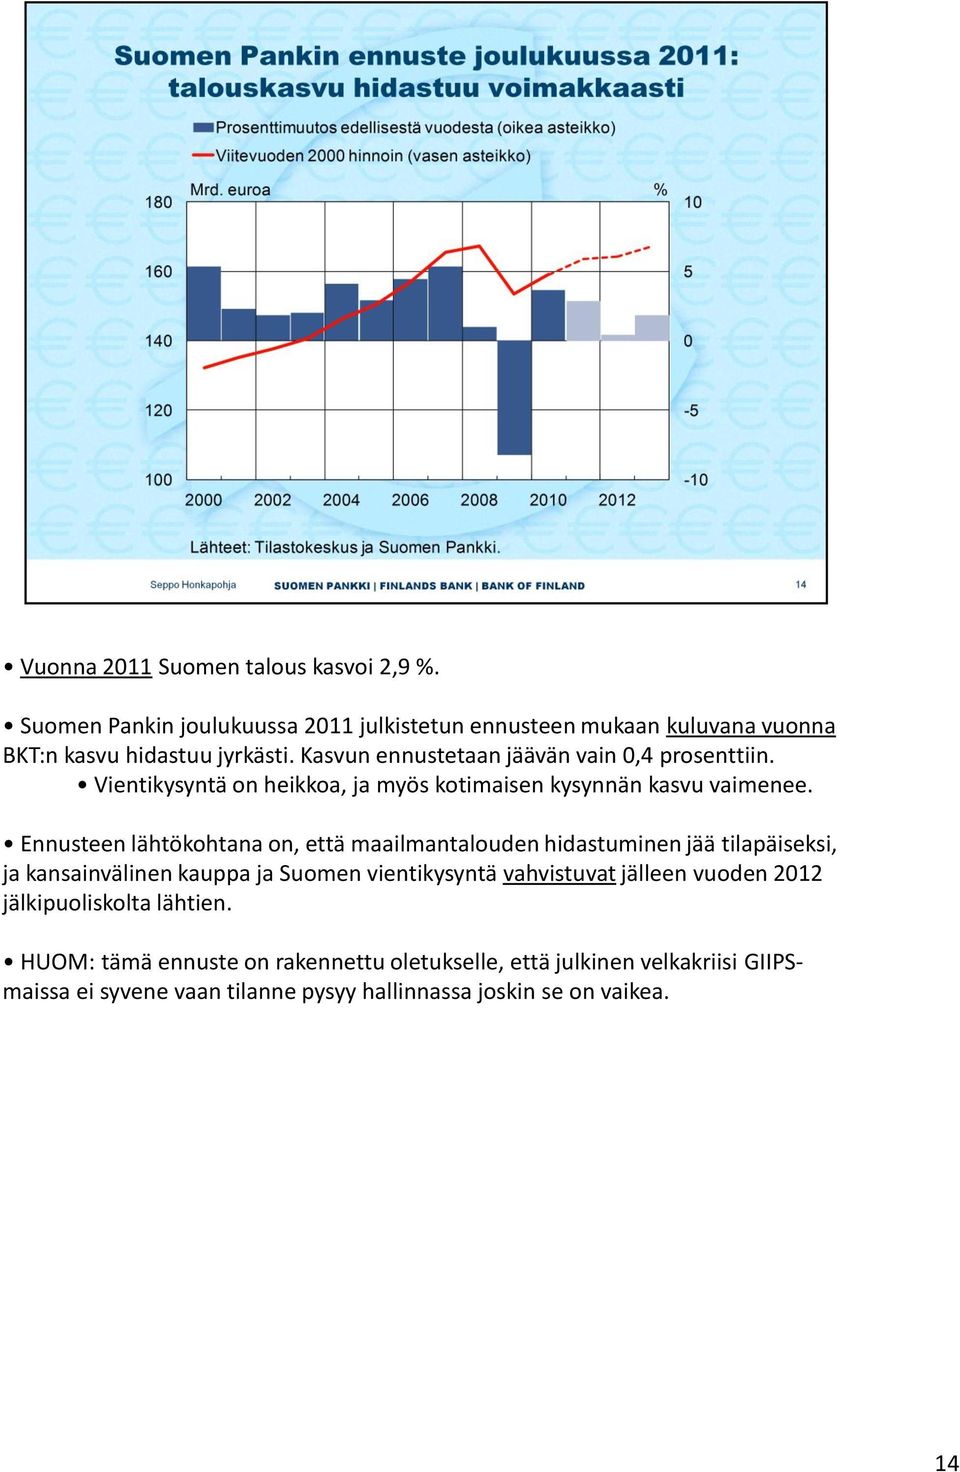 Ennusteen lähtökohtana on, että maailmantalouden hidastuminen jää tilapäiseksi, ja kansainvälinen kauppa ja Suomen vientikysyntä vahvistuvat jälleen